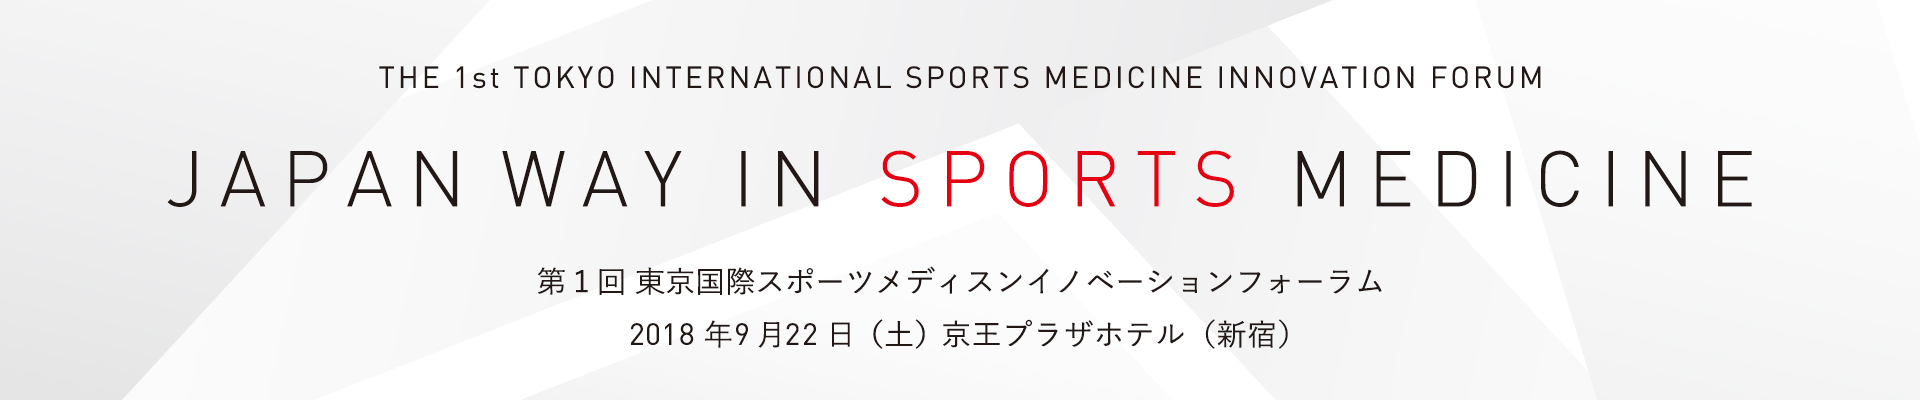 第1回東京国際スポーツメディスンイノベーションフォーラム